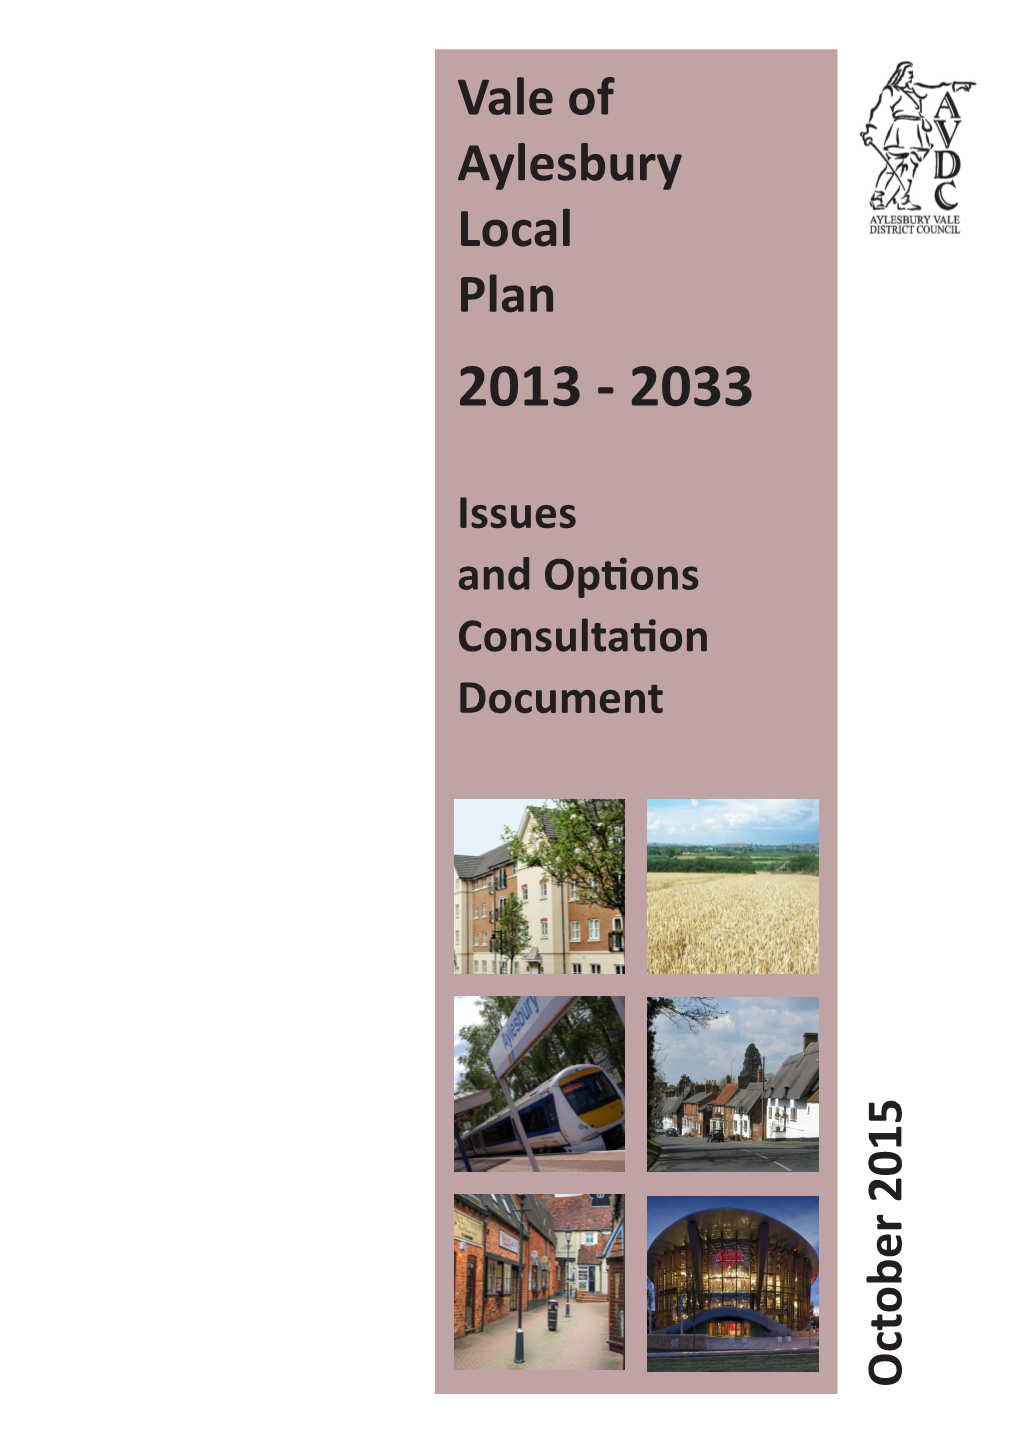 Vale of Aylesbury Local Plan 2013 - 2033